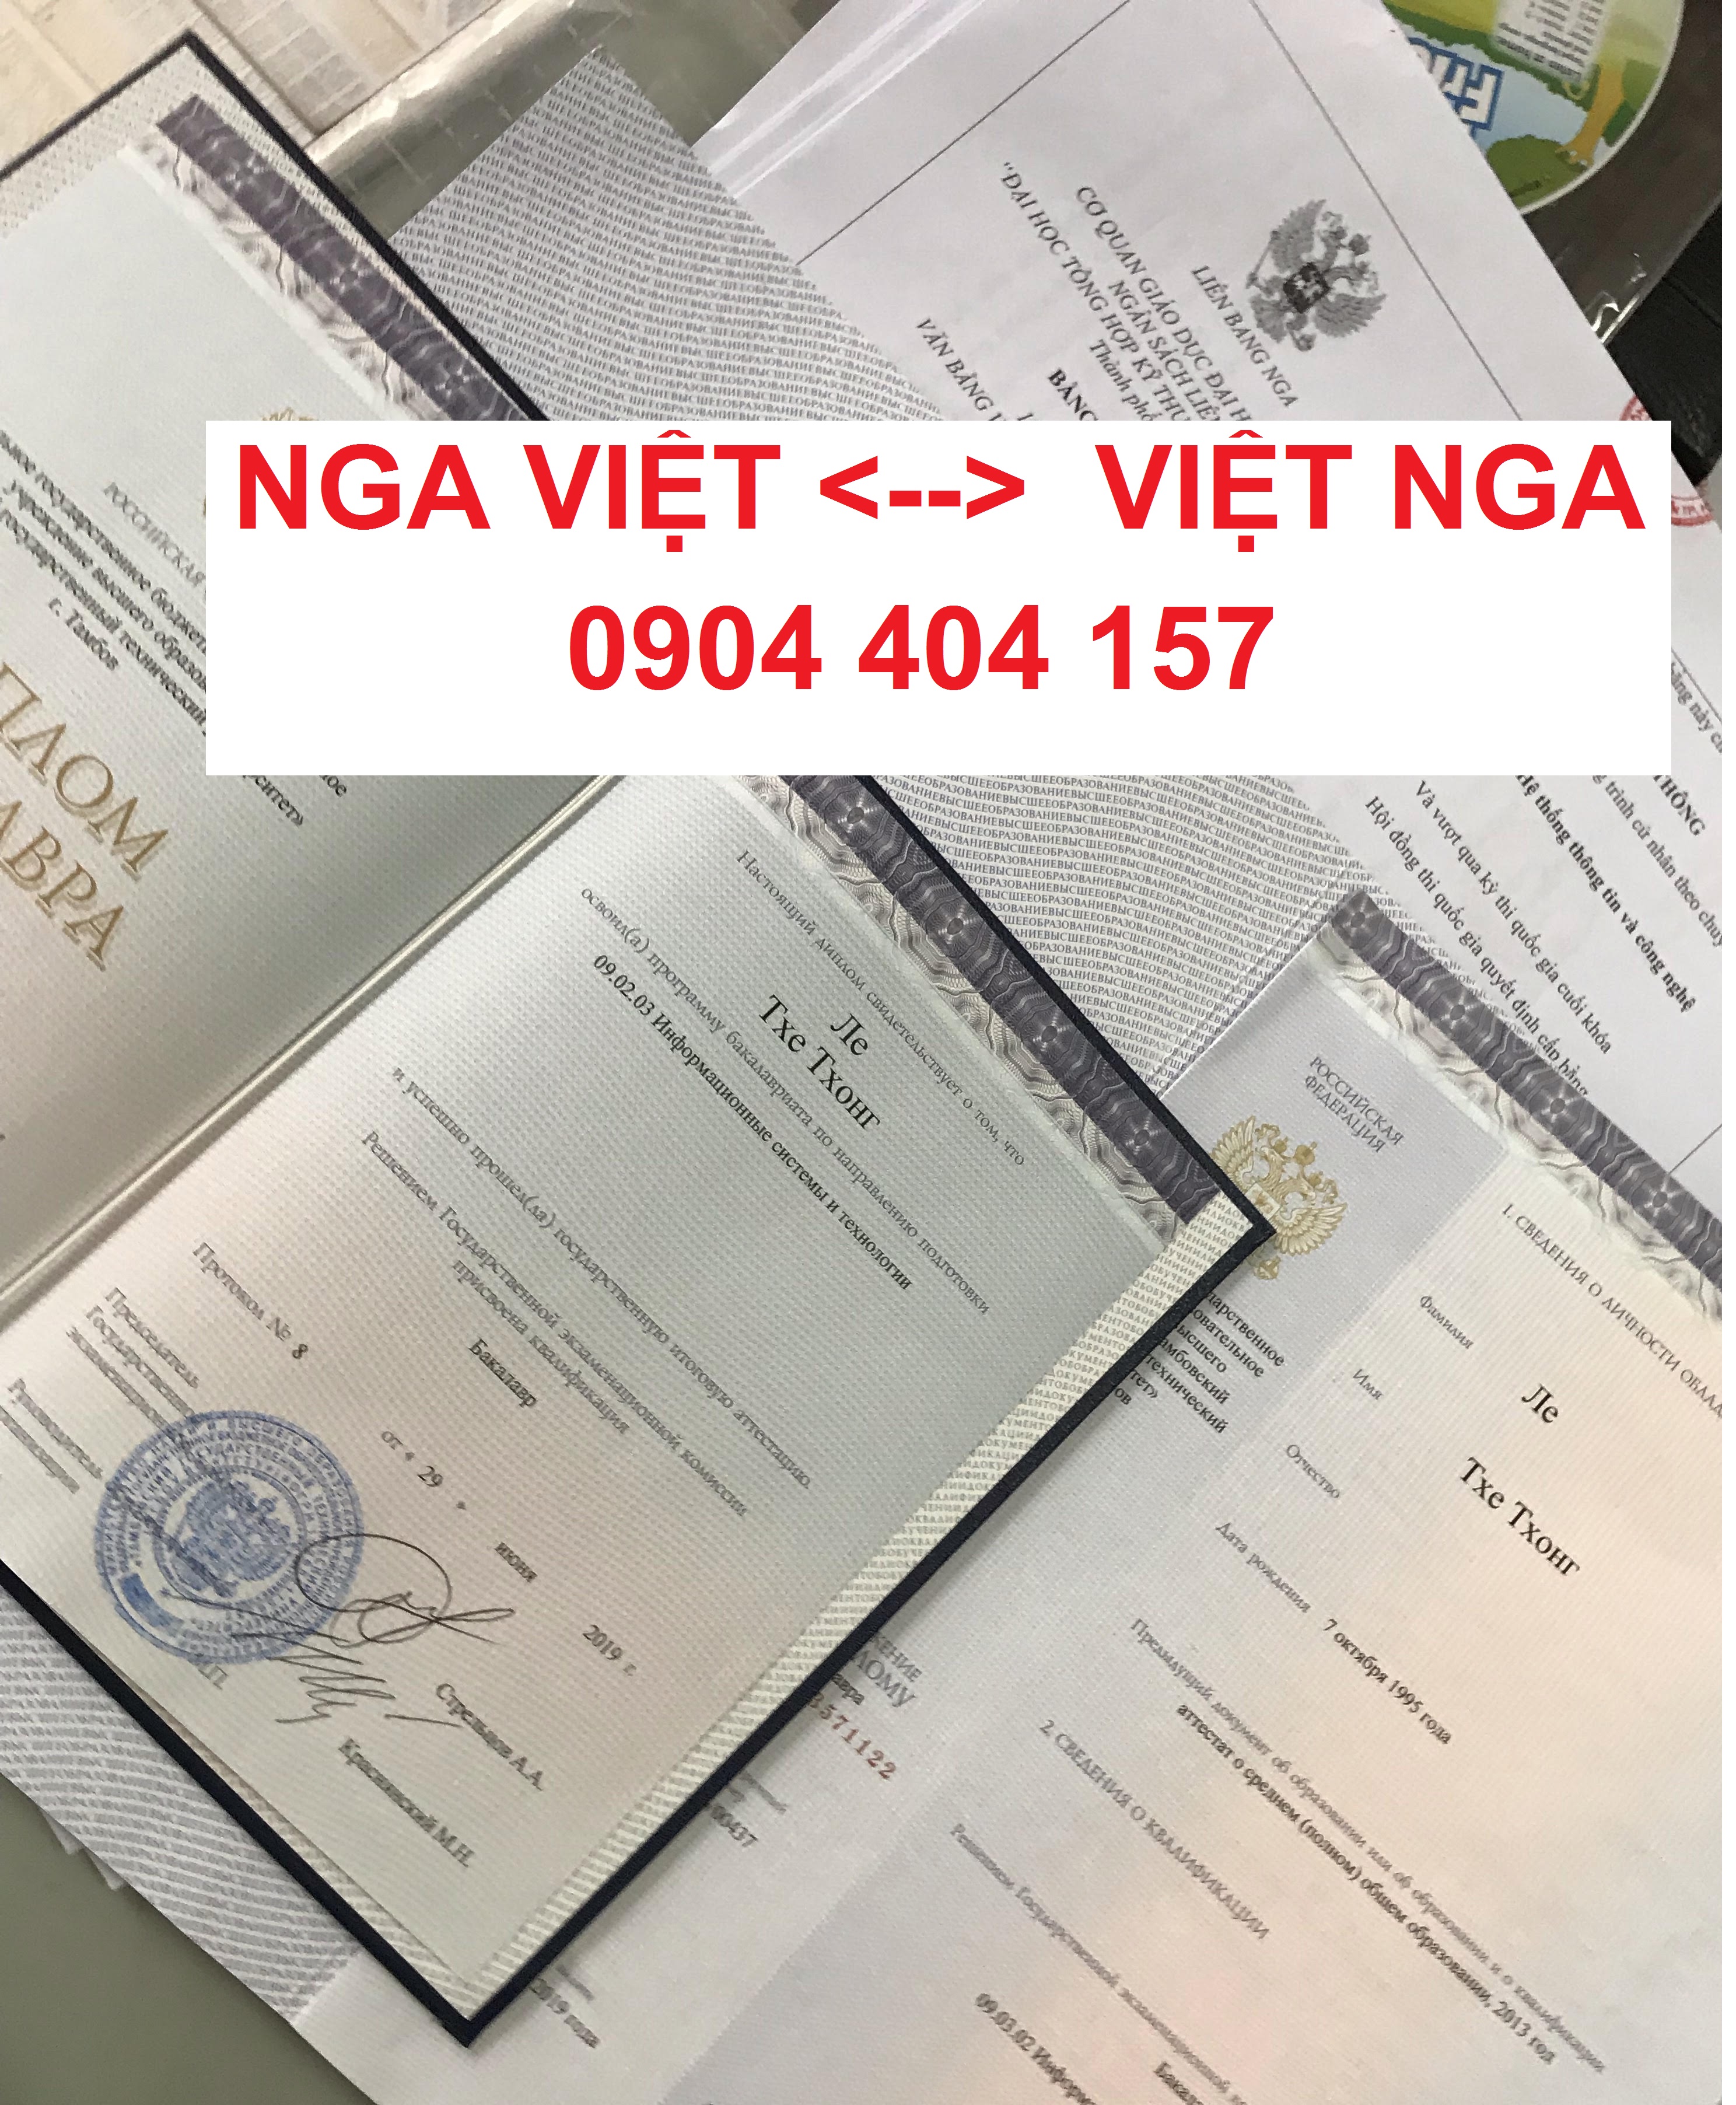 Dịch thuật công chứng - Dich Thuật Viettrans - Công Ty TNHH Dịch Thuật Và Dịch Vụ Viettrans